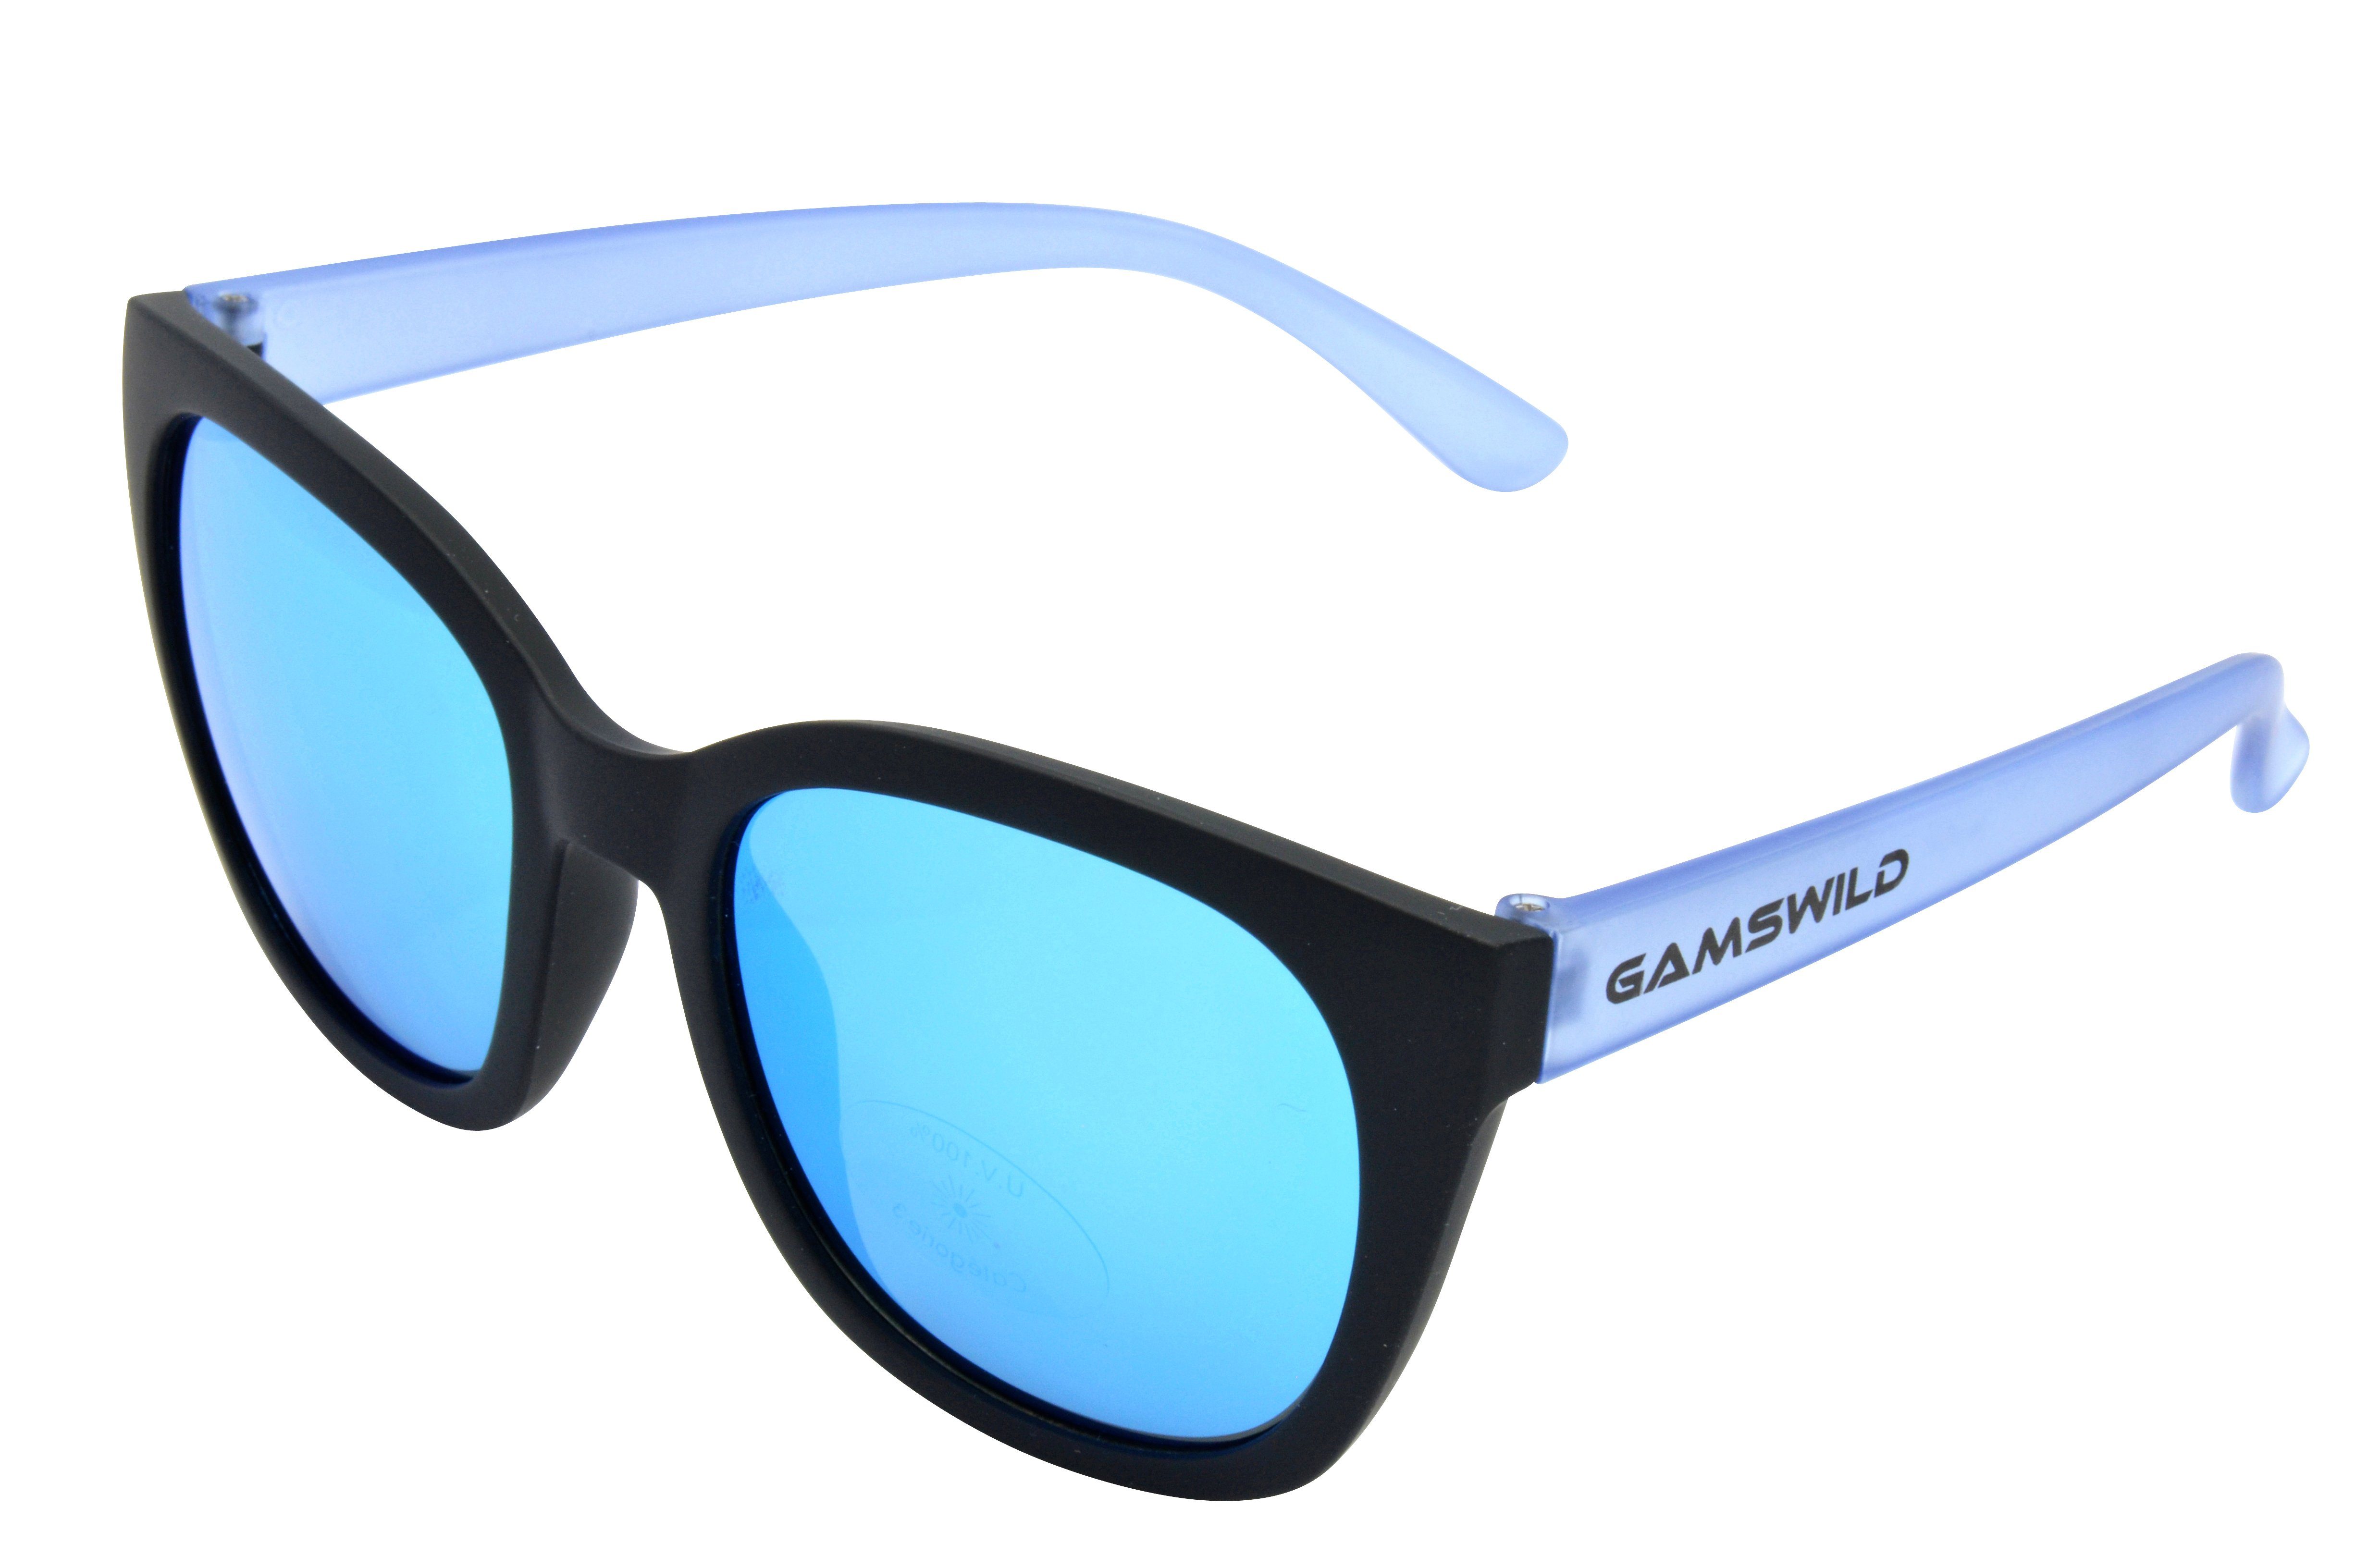 Gamswild Sonnenbrille WJ7517 GAMSKIDS Jugendbrille 8-18 Jahre Kinderbrille Mädchen Damen kids Unisex, blau, pink, grau halbtransparenter Rahmen